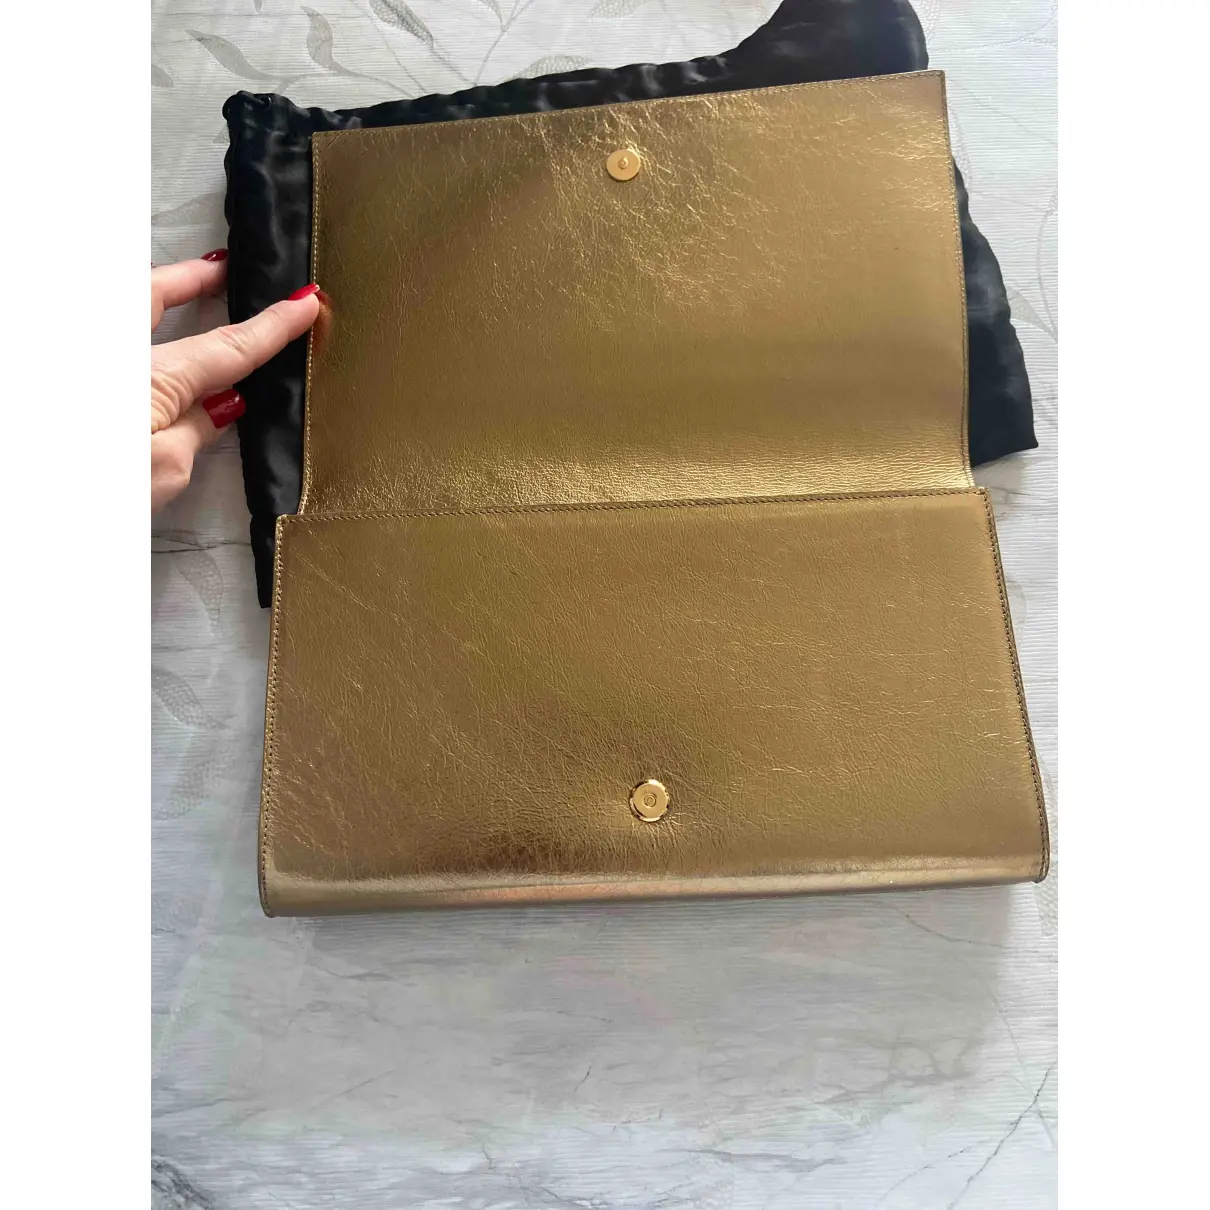 Buy Yves Saint Laurent Belle de Jour leather clutch bag online